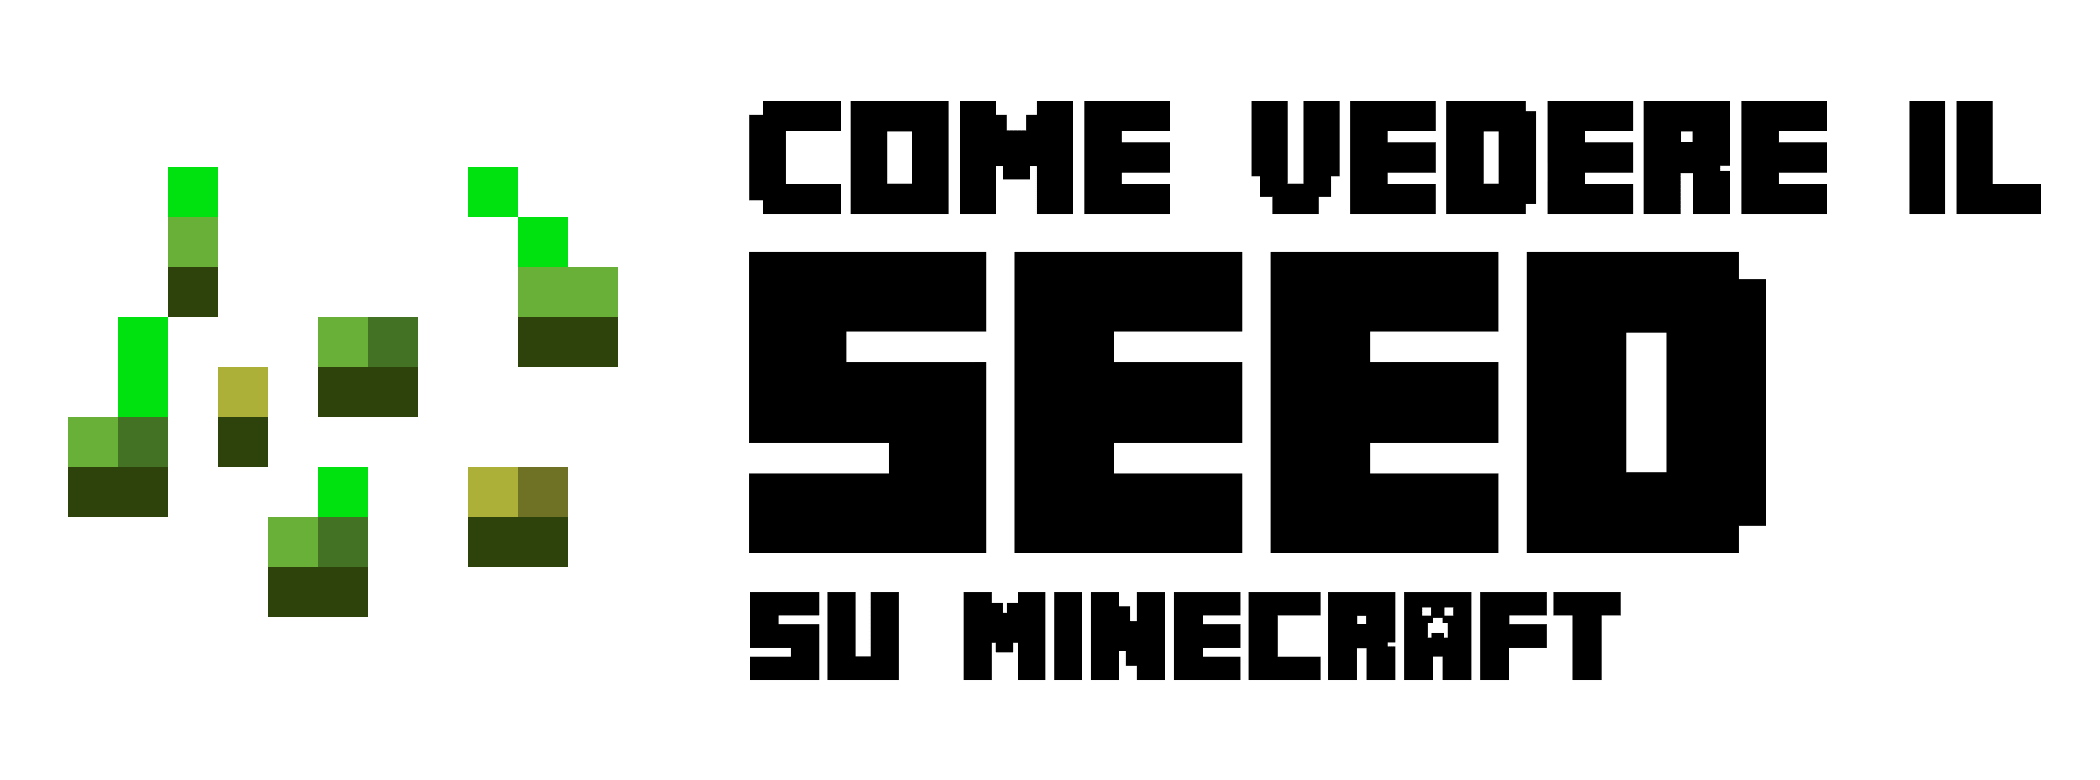 Intro tutorial su Come Vedere il Seed su Minecraft. Richiederà un comando molto semplice, che si può fare senza i Cheat. Per sapere come, buona lettura!